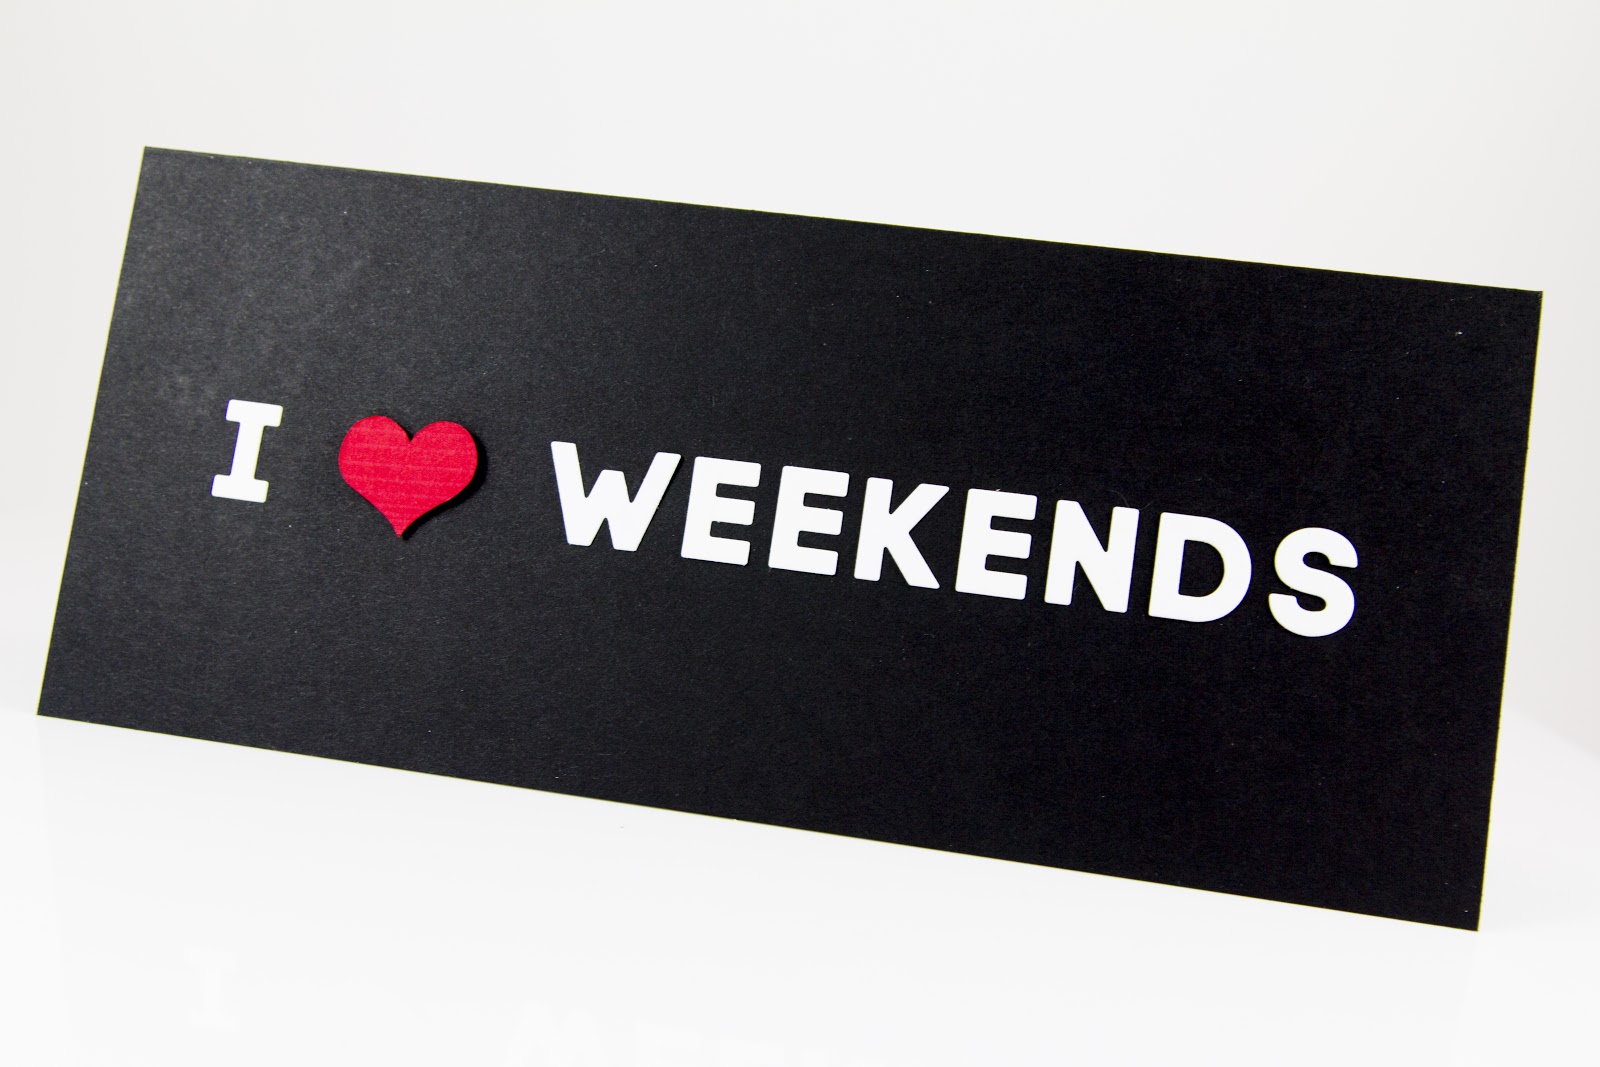 Weekend dialogues. Weekend надпись. Уикенд картинки. Weekends надпись. Weekend выходные.